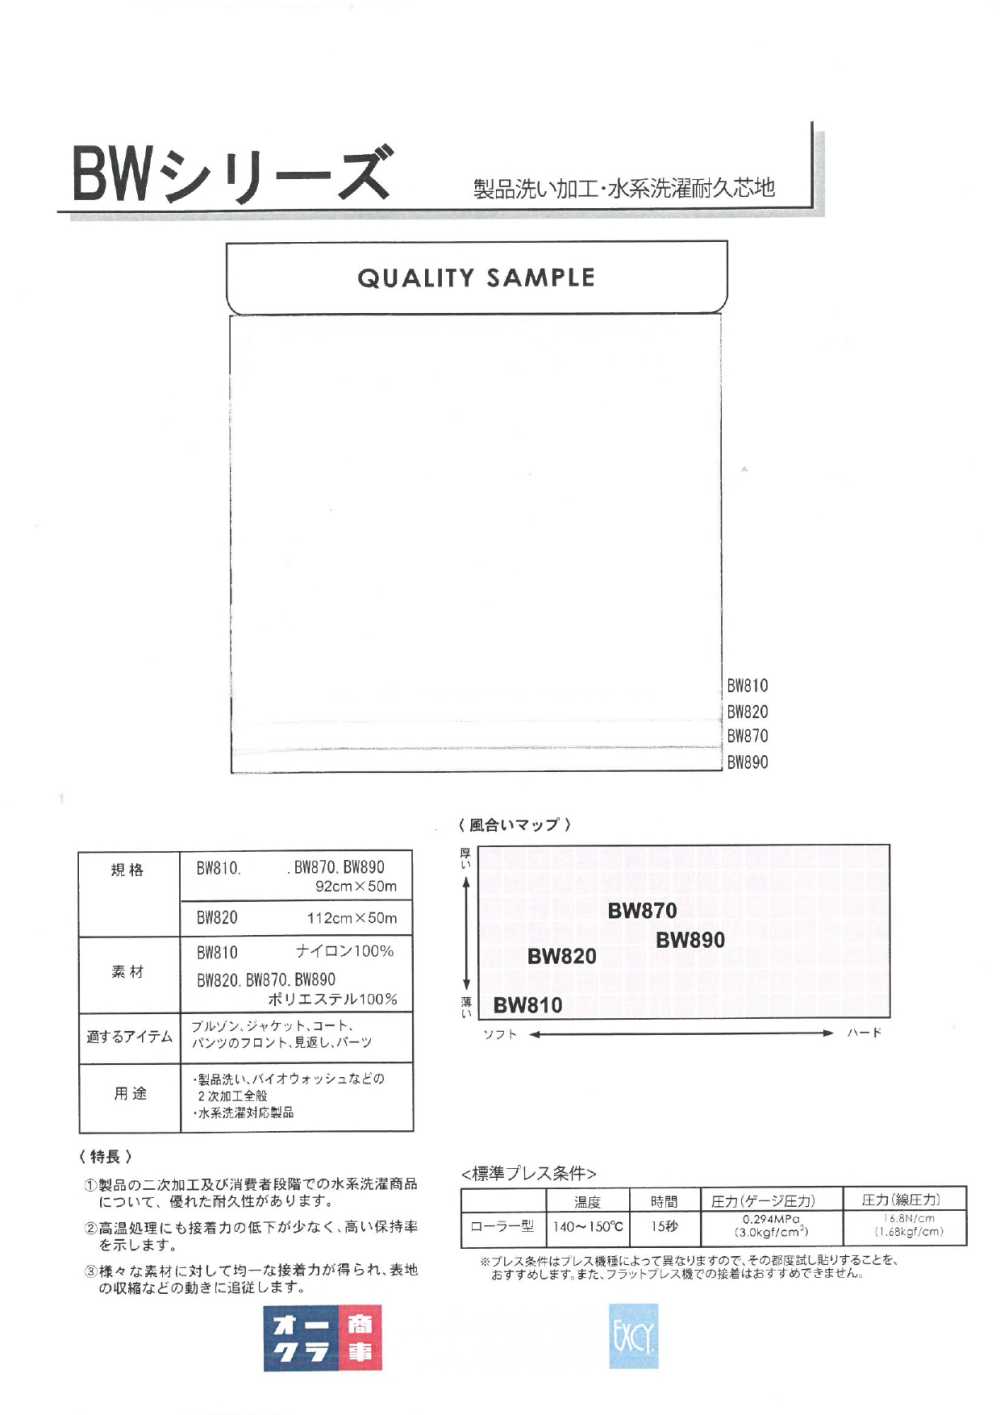 BW890 Gia Công Giặt Sản Phẩm/giặt Bằng Nước Có Lớp Lót Bền (30D)[Xen Kẽ] Nittobo